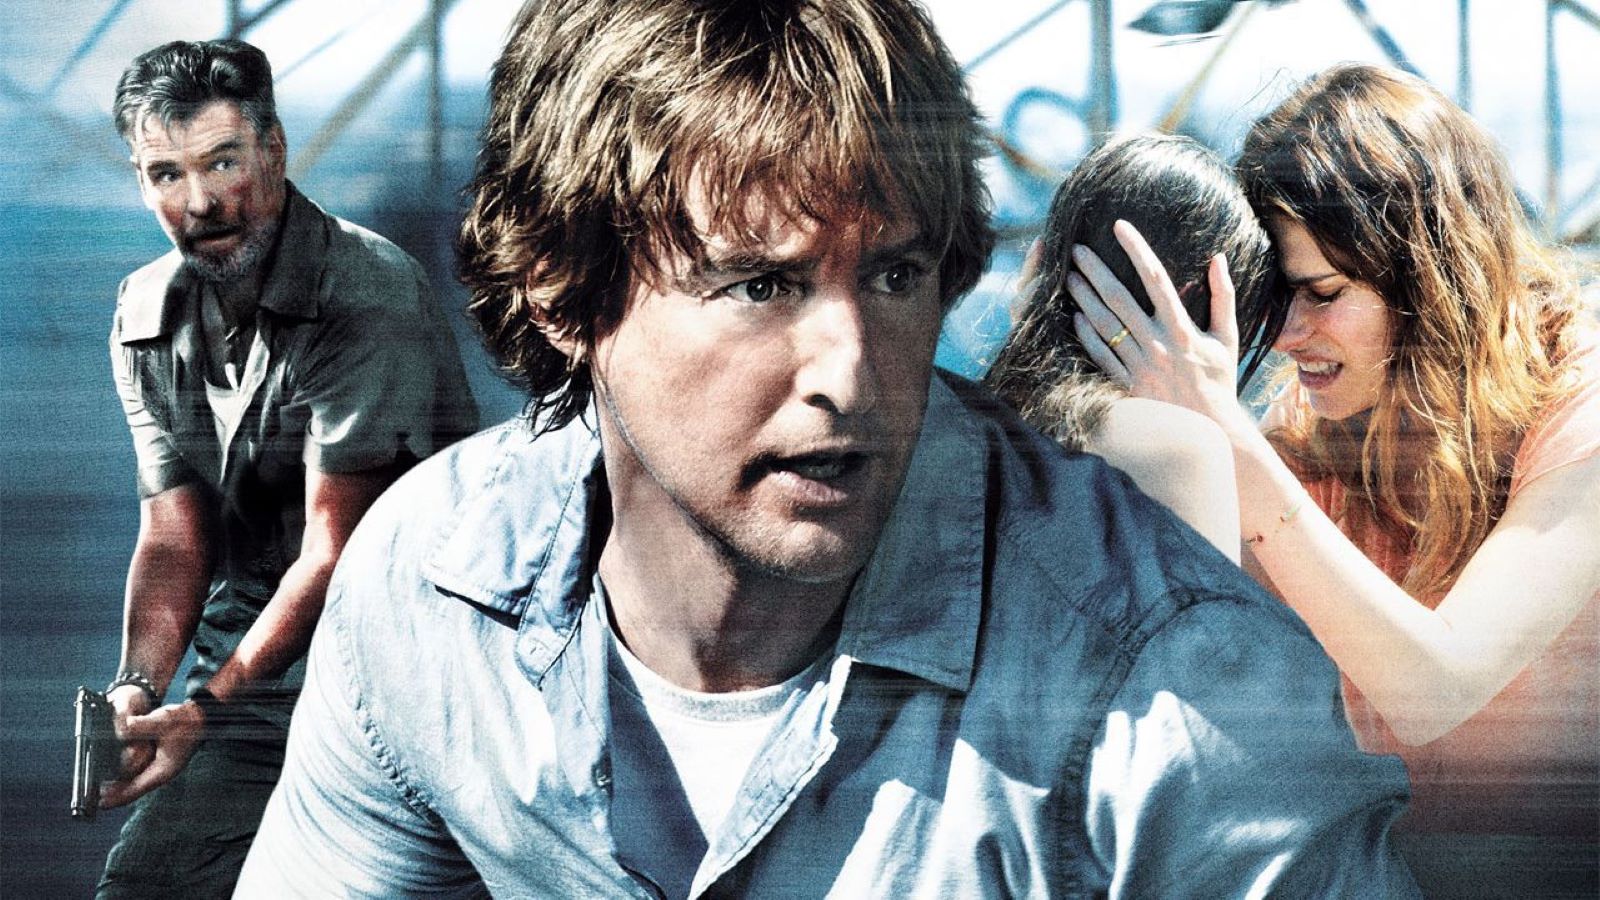 No Escape - Colpo di stato stasera su Canale 20 Mediaset: cast e trama del thriller con Owen Wilson